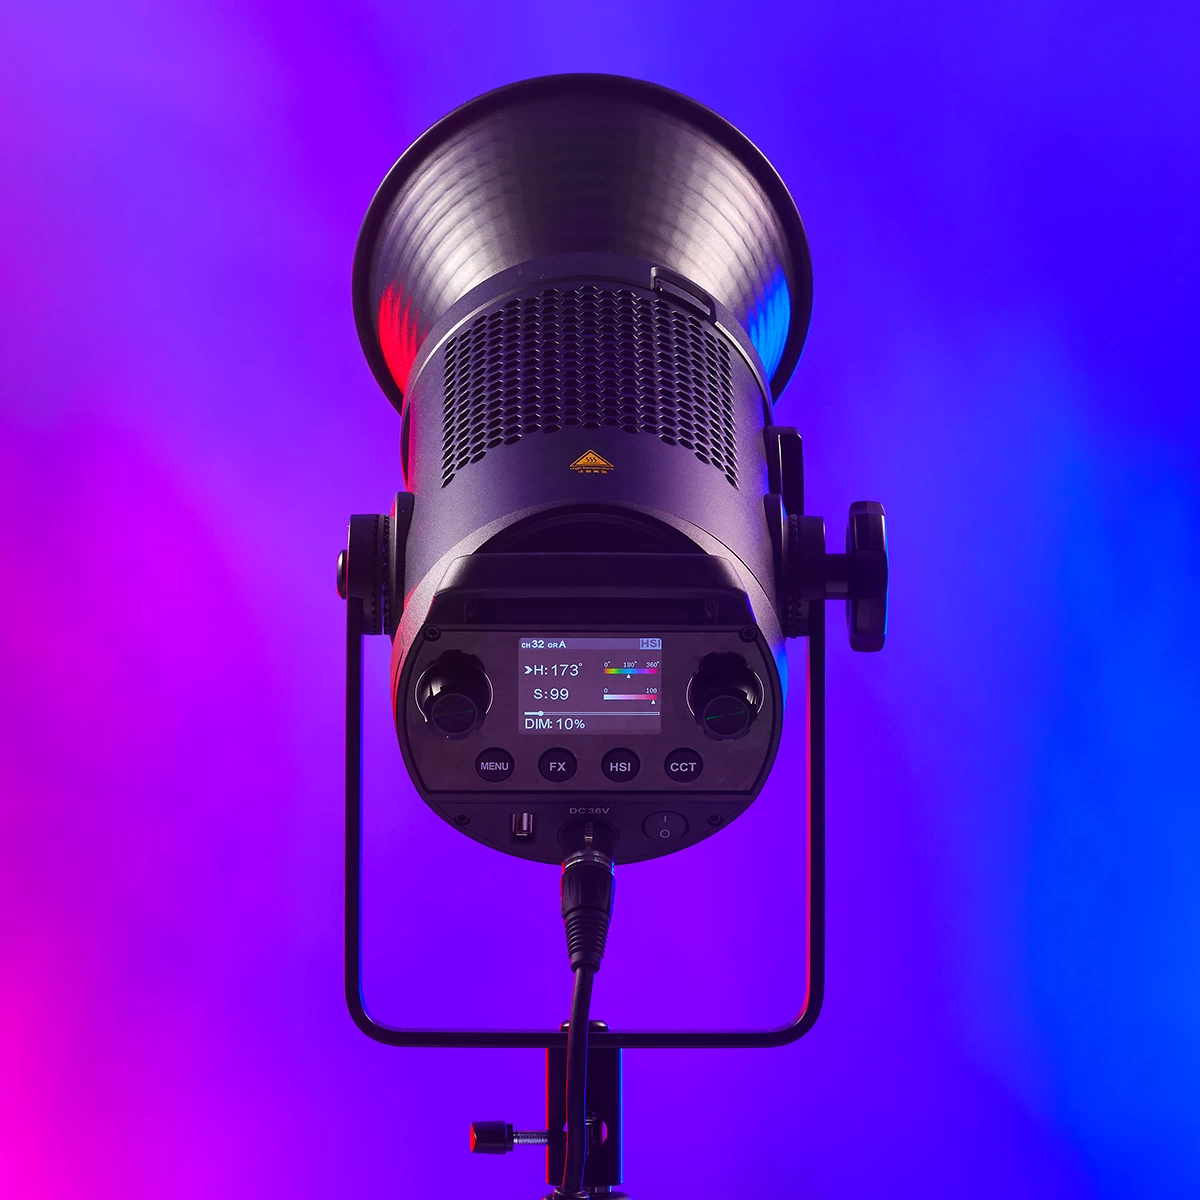 Осветитель GODOX SZ300R RGB Zoom